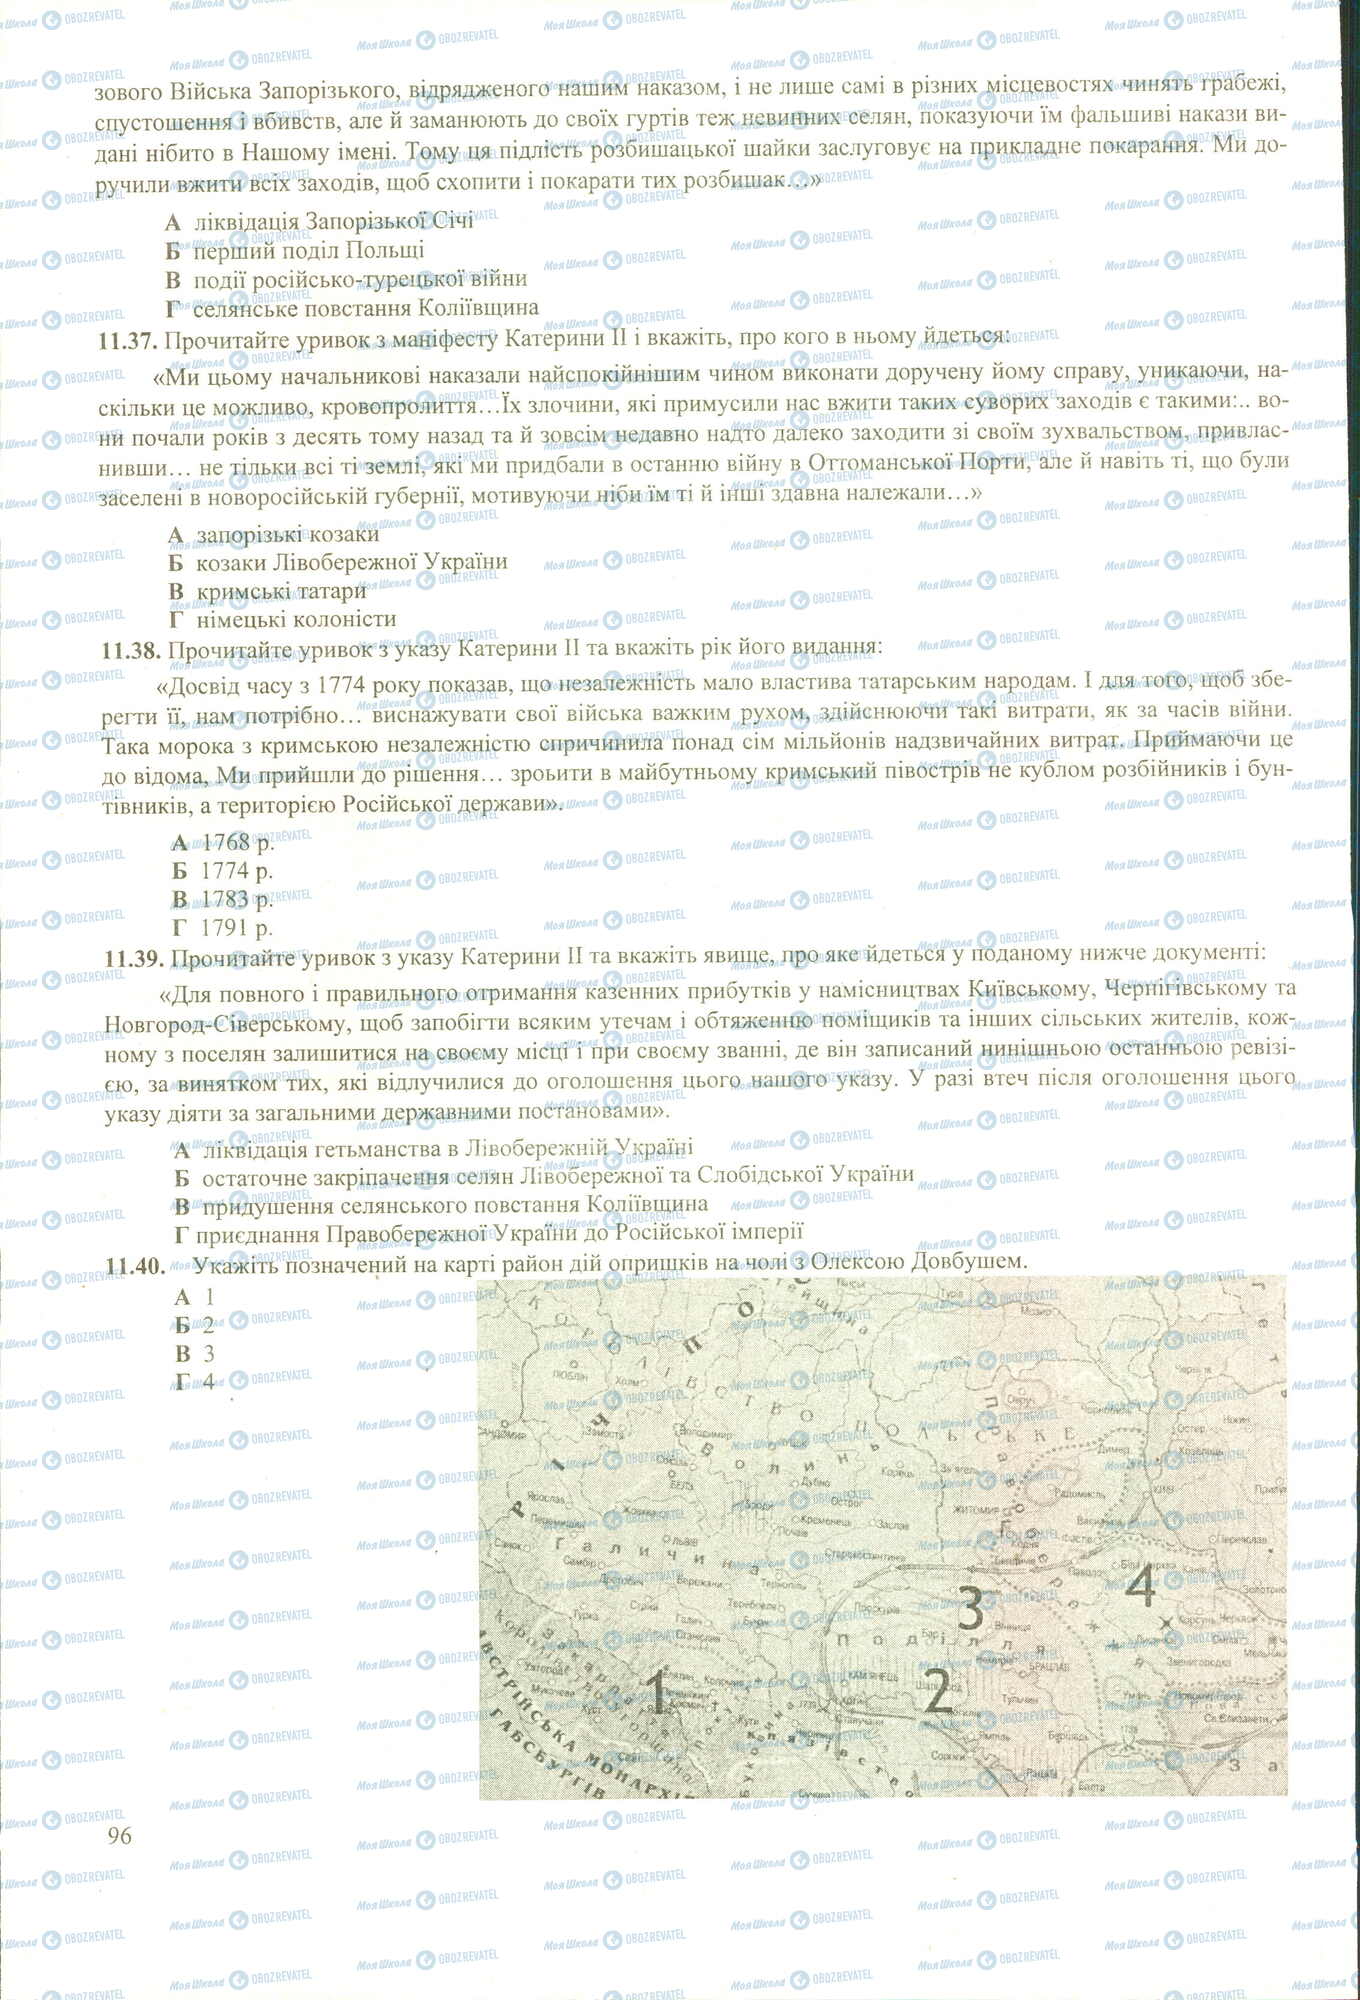 ЗНО История Украины 11 класс страница 37-40